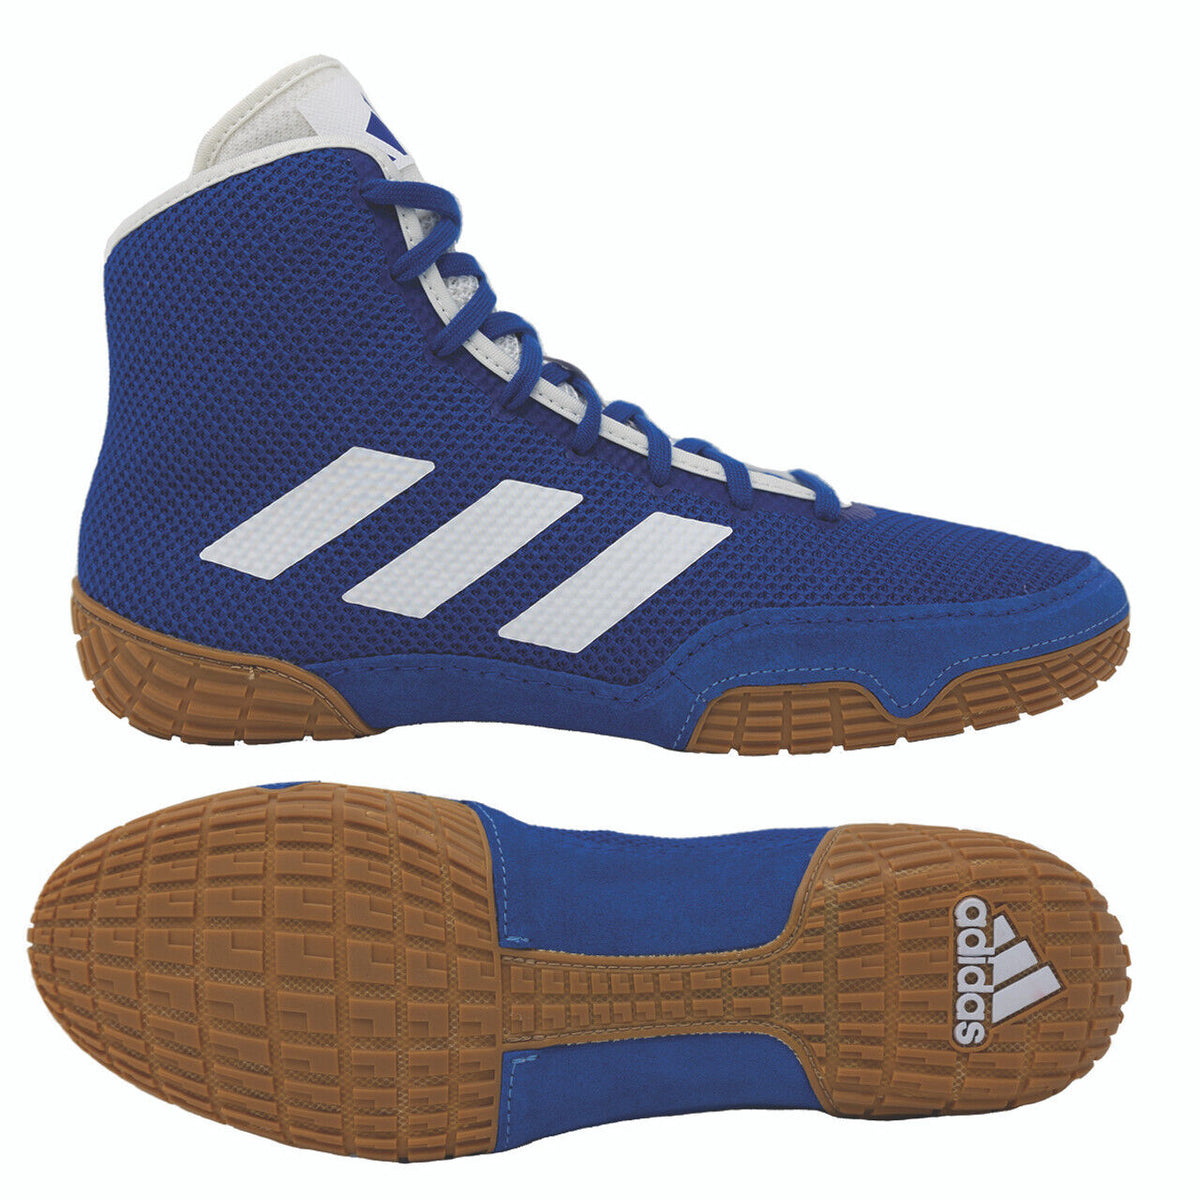 Rokoborski copati Adidas Tech-Fall v modri barvi. Zdaj po najboljši ceni pri Phantom Athletics . Rokoborski čevlji Adidas so med najbolj iskanimi čevlji med rokoborci po vsem svetu, saj ponujajo vrhunsko kakovost skupaj z vrhunskim udobjem. Robusten podplat zagotavlja oprijem na rokoborski blazini. 